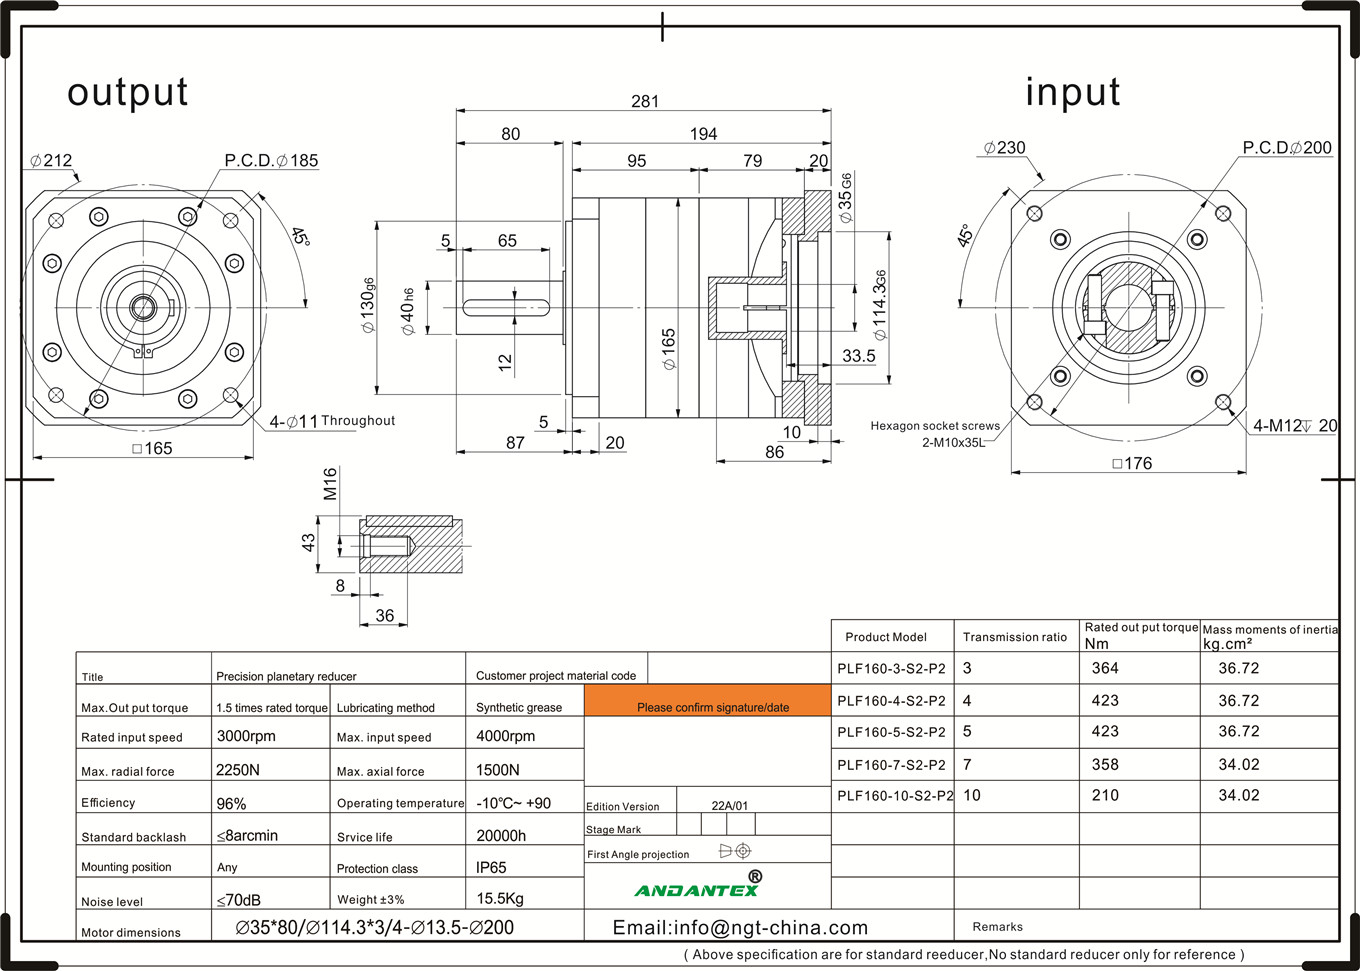 पॅकेजिंग मशीन इक्विपमेंट-01 मध्ये Andantex plf160-7-s2-p2 मानक मालिका ग्रहांचे गिअरबॉक्सेस